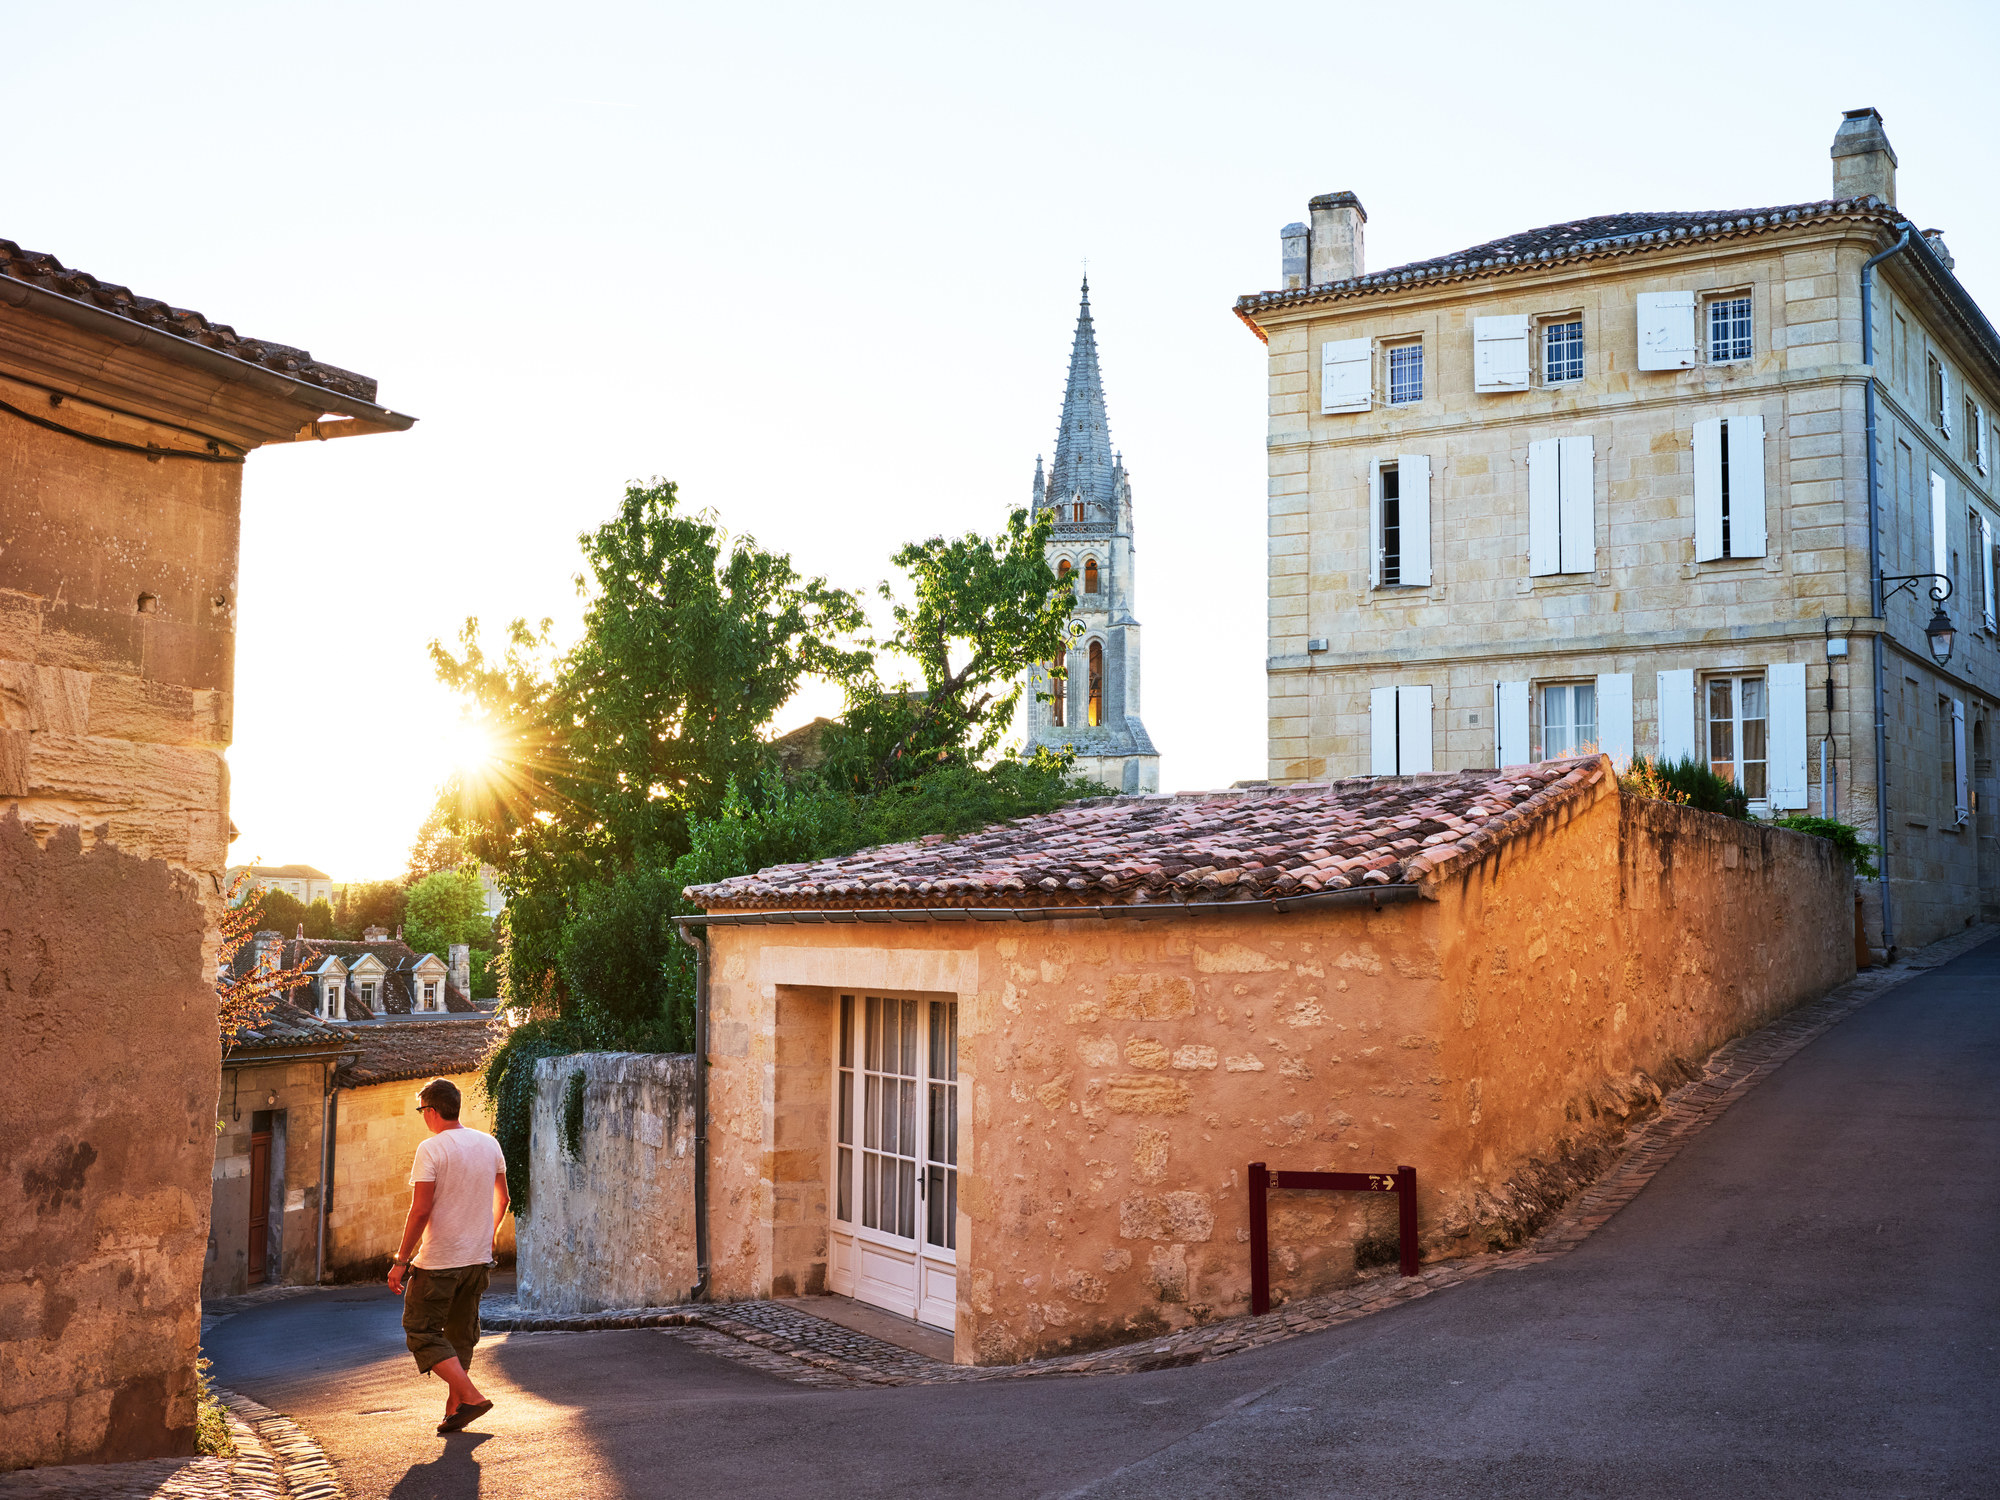 Tourist walking the streets of Saint-Emilion, Bordeaux.